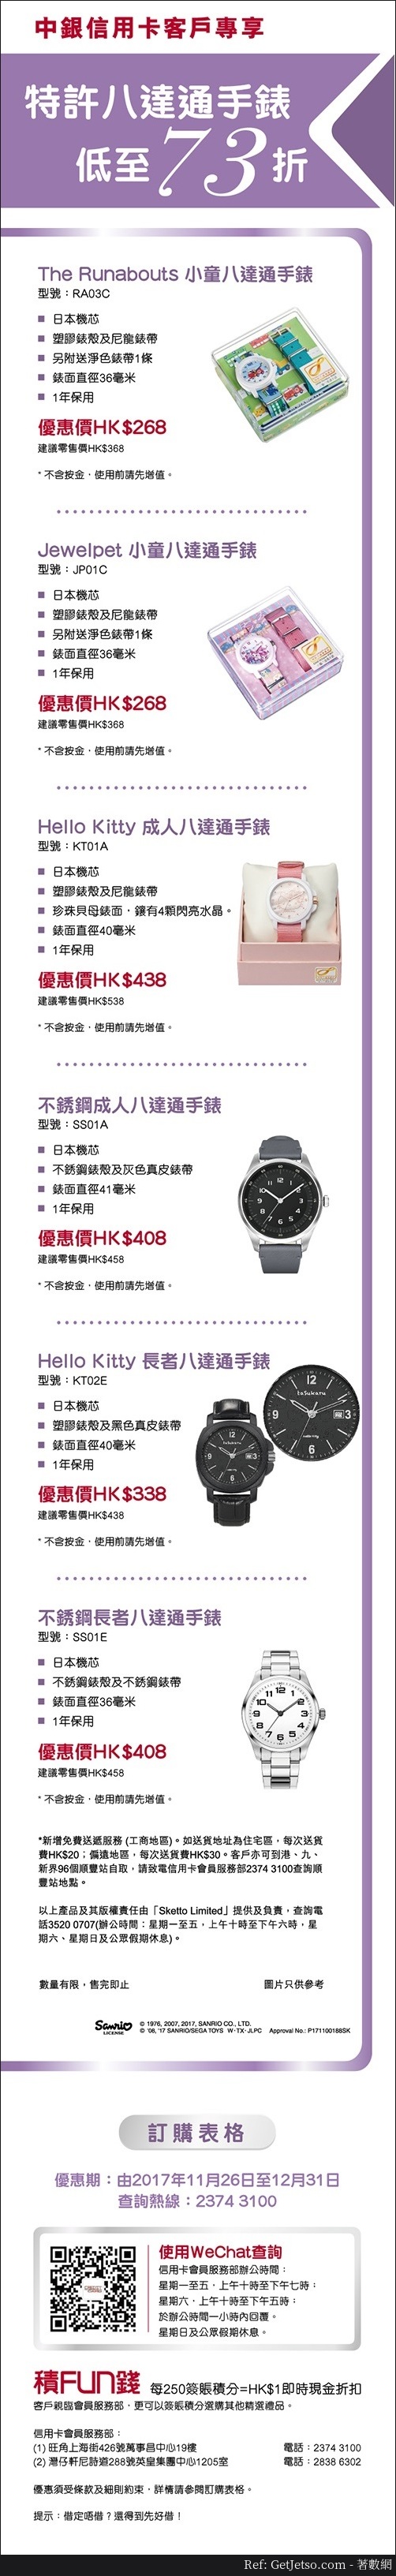 低至73折特許八達通手錶優惠@中銀信用卡(至17年12月31日)圖片1